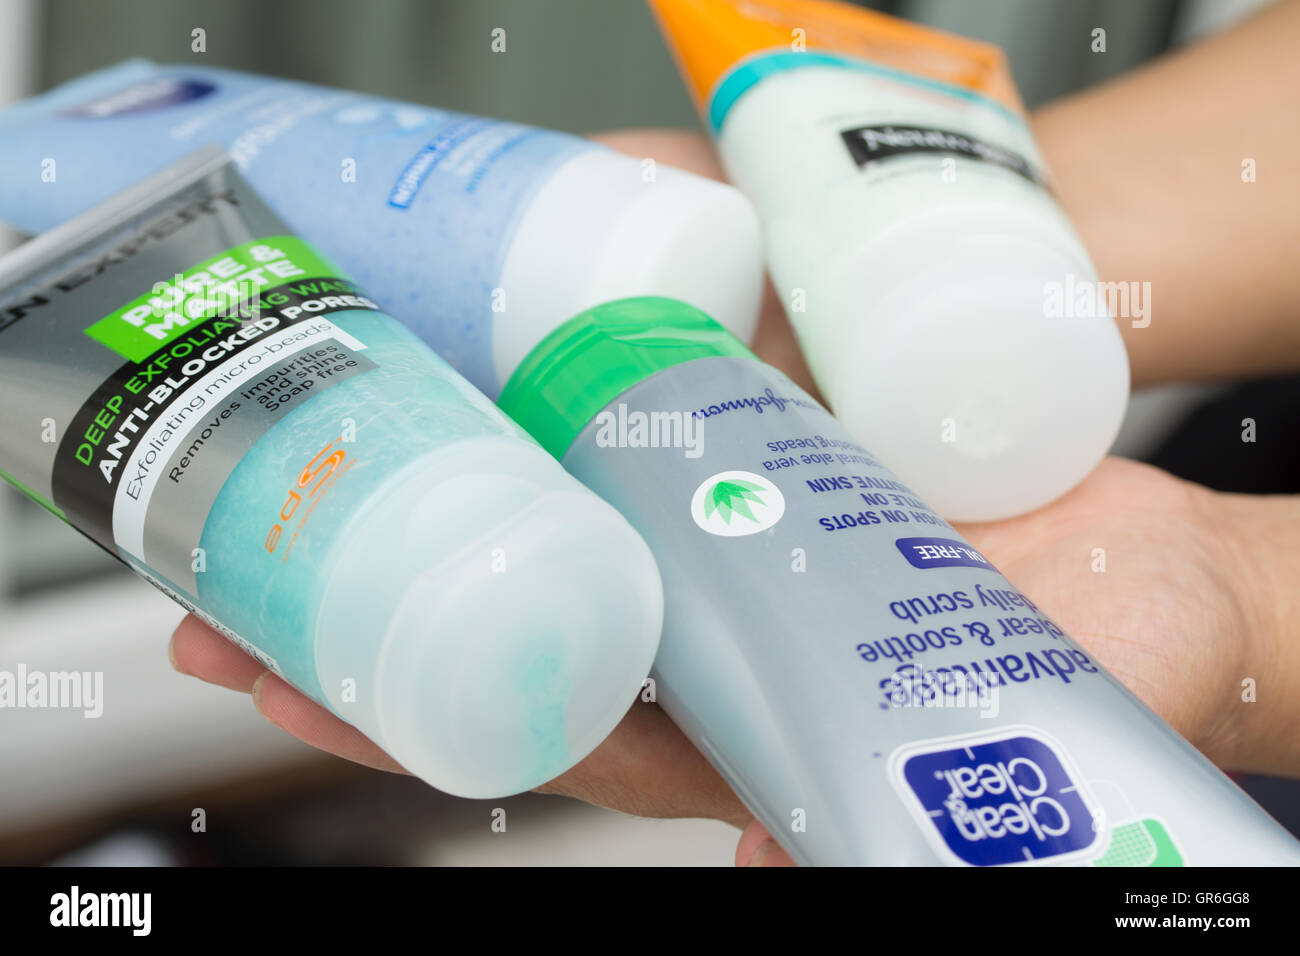 Une variété de produits pour le corps exfoliant contenant des microbilles de plastique Banque D'Images